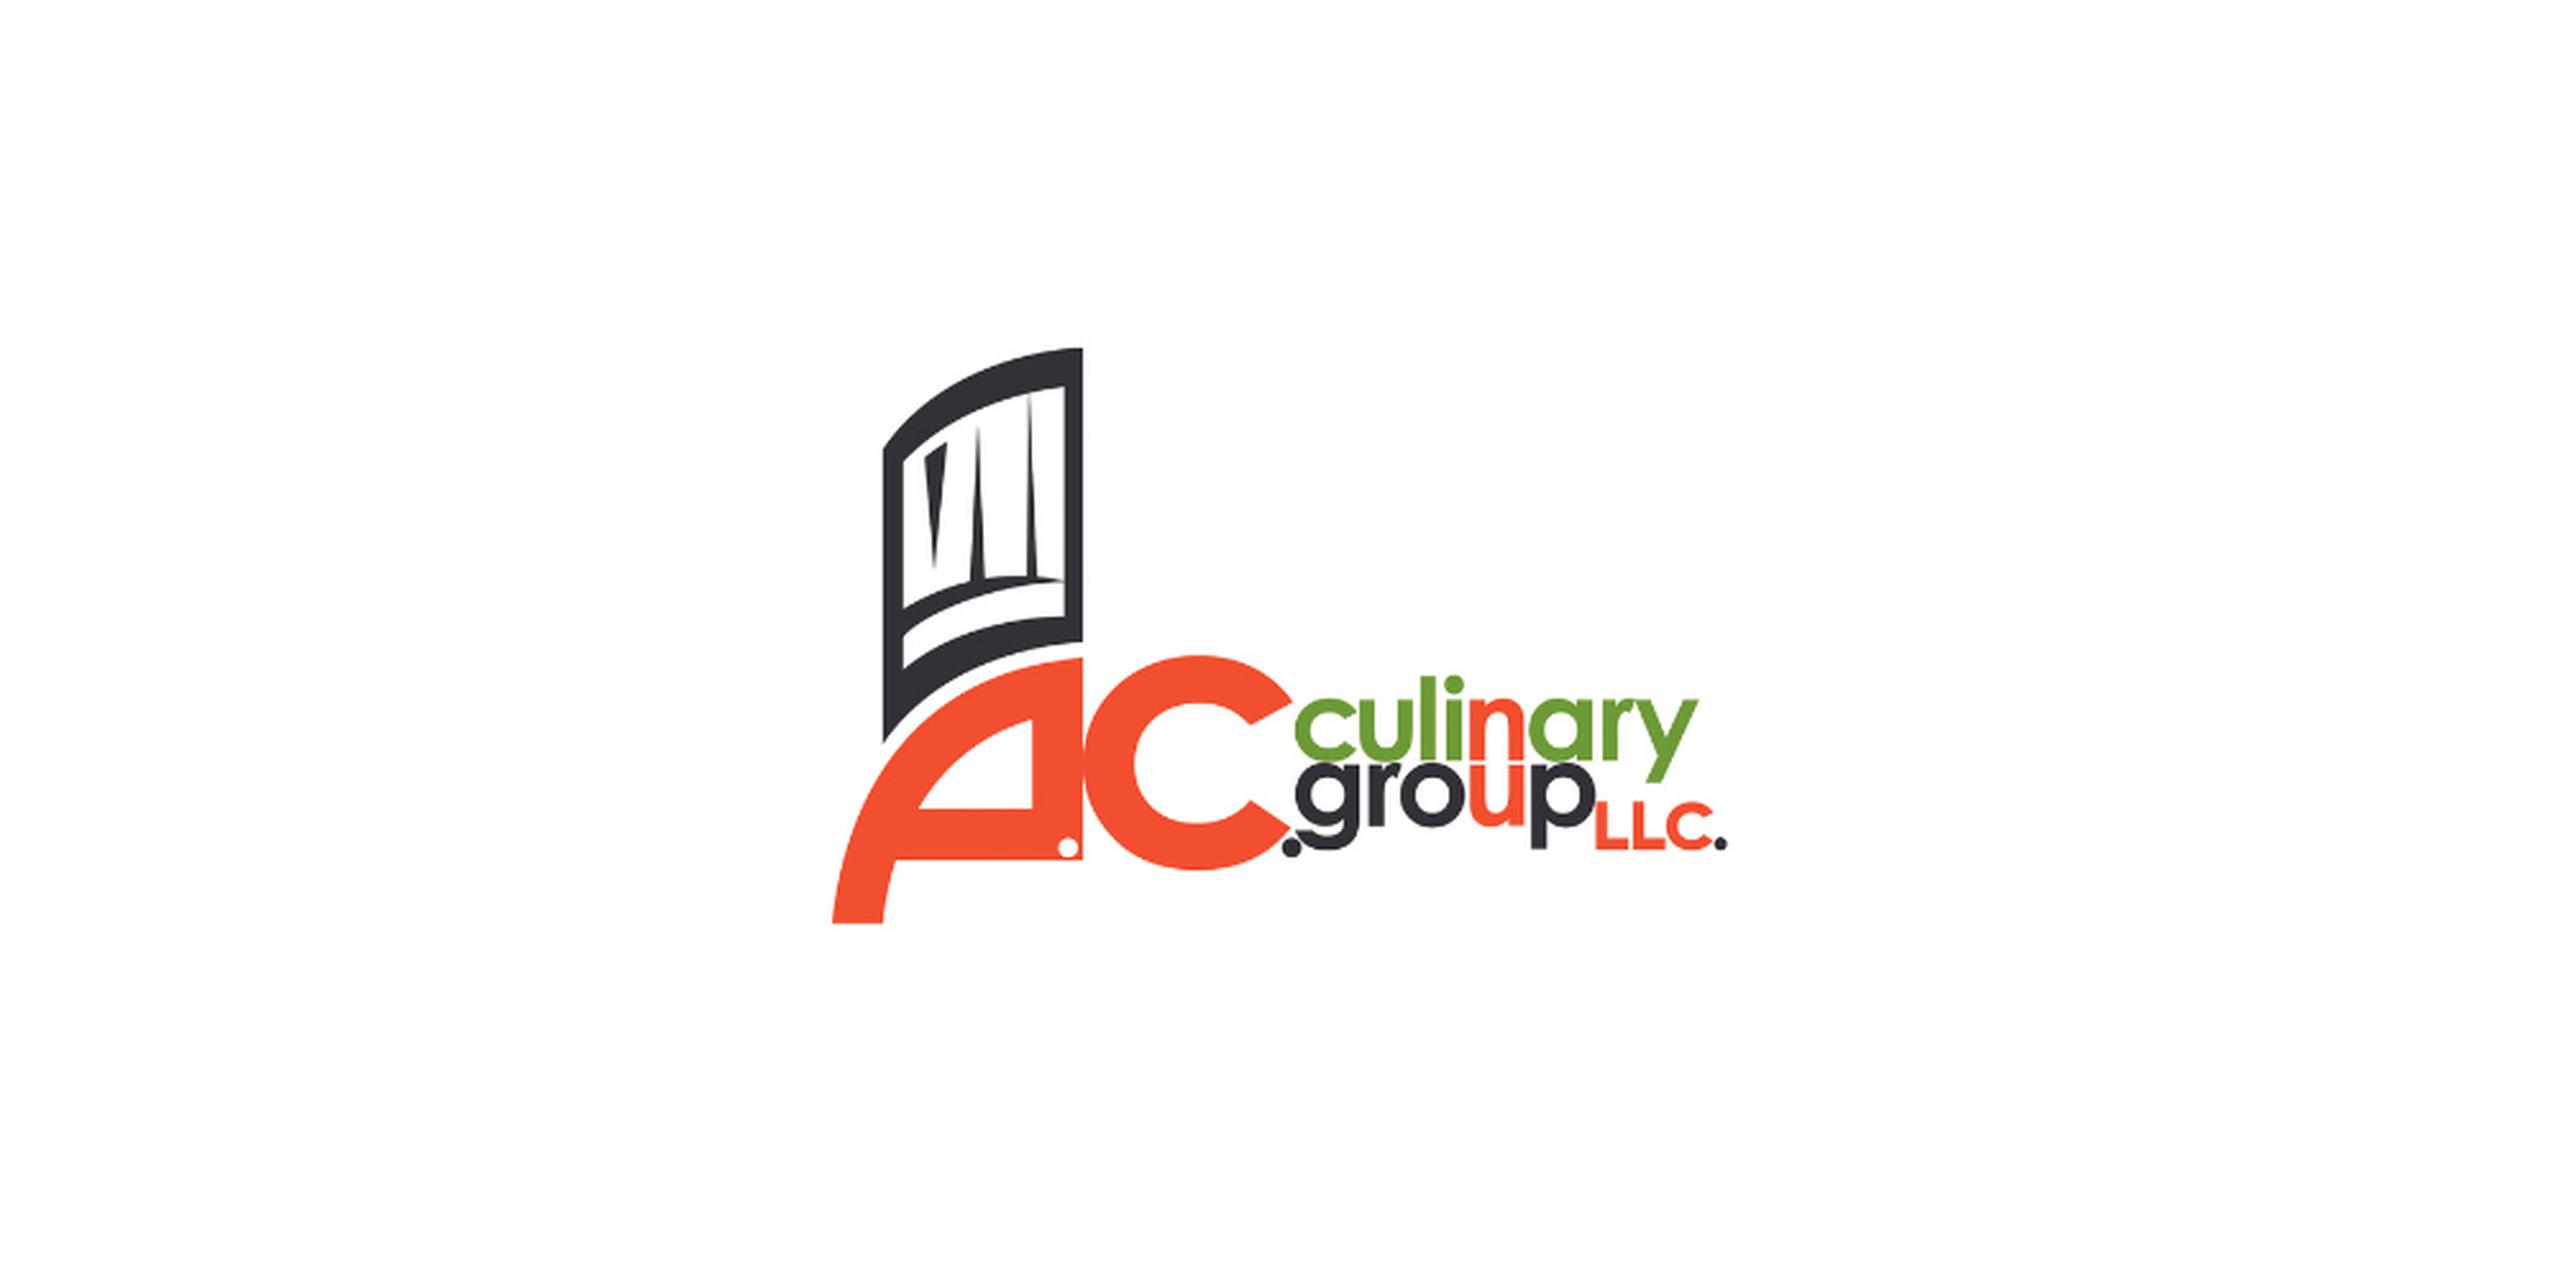 Los productos de AC Culinary son distribuidos en todo el mercado de Puerto Rico y en la costa este de Estados Unidos.